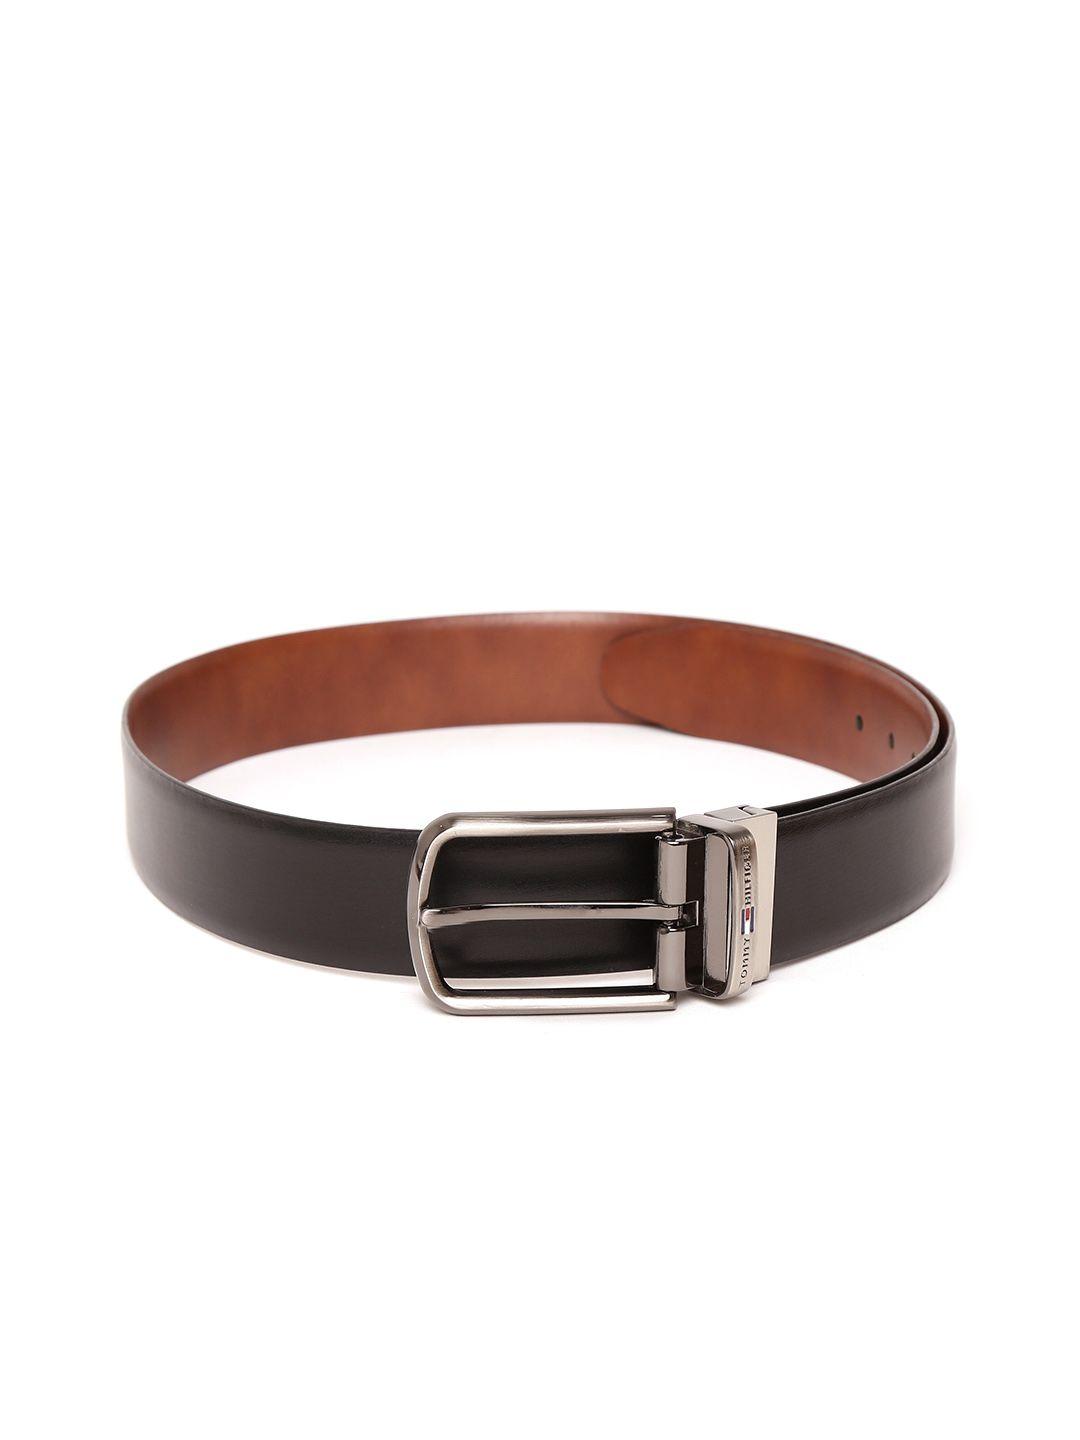 tommy-hilfiger-men-black-leather-belt